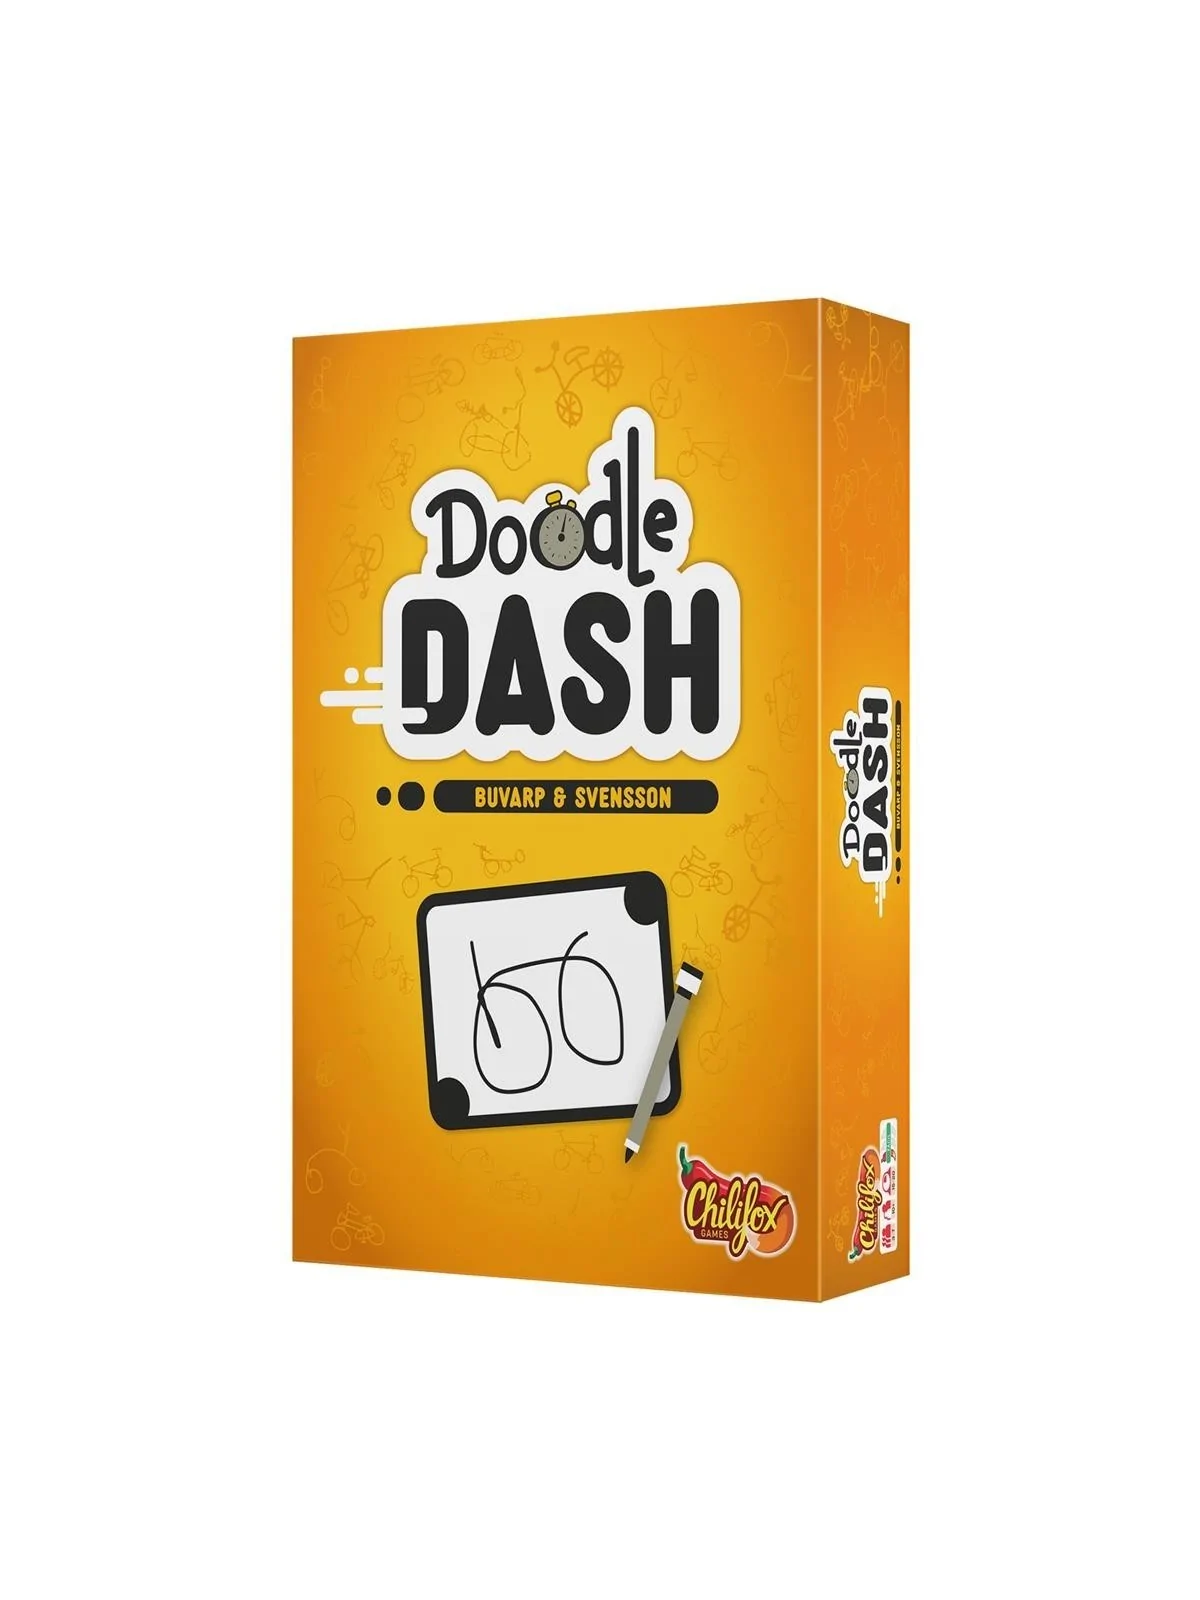 Comprar Doodle Dash barato al mejor precio 19,75 € de Chilifox